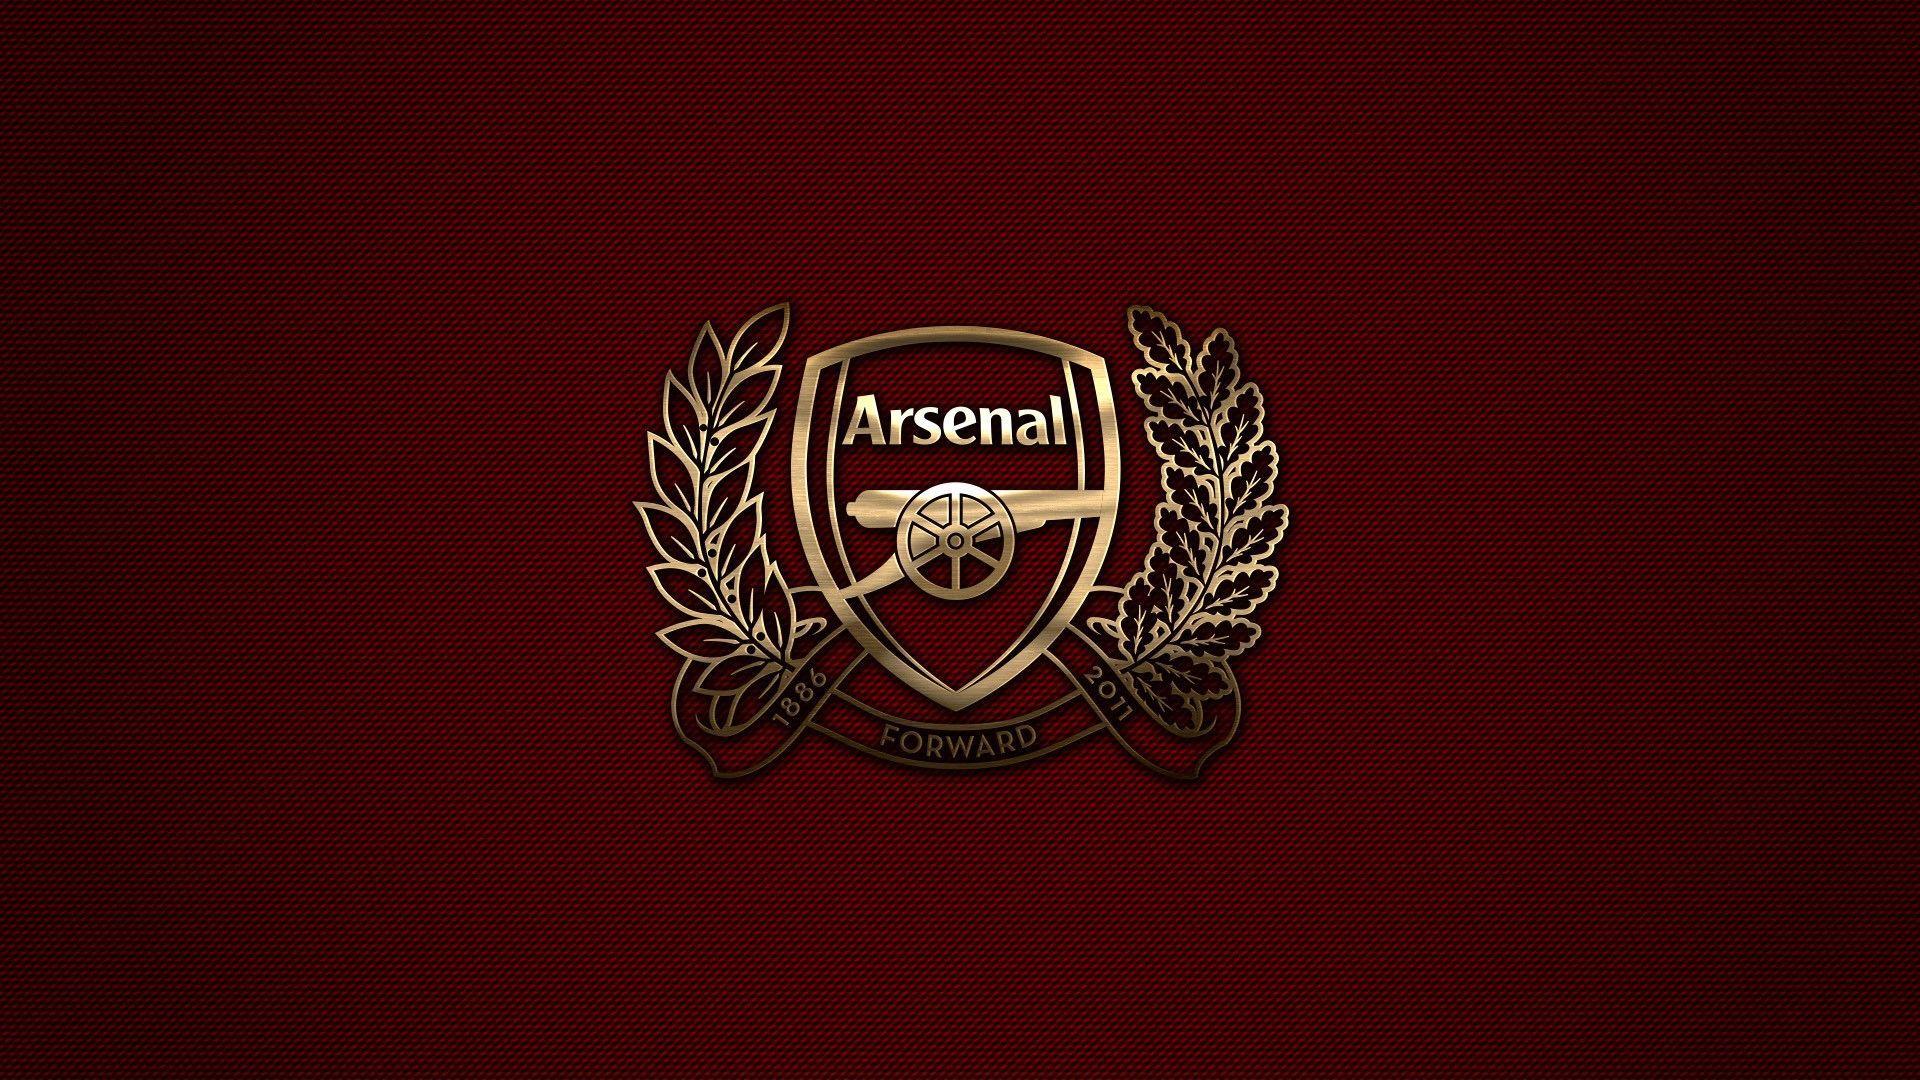 Arsenal London, Arsenal Fc, Premier League, Sports Club Wallpaper